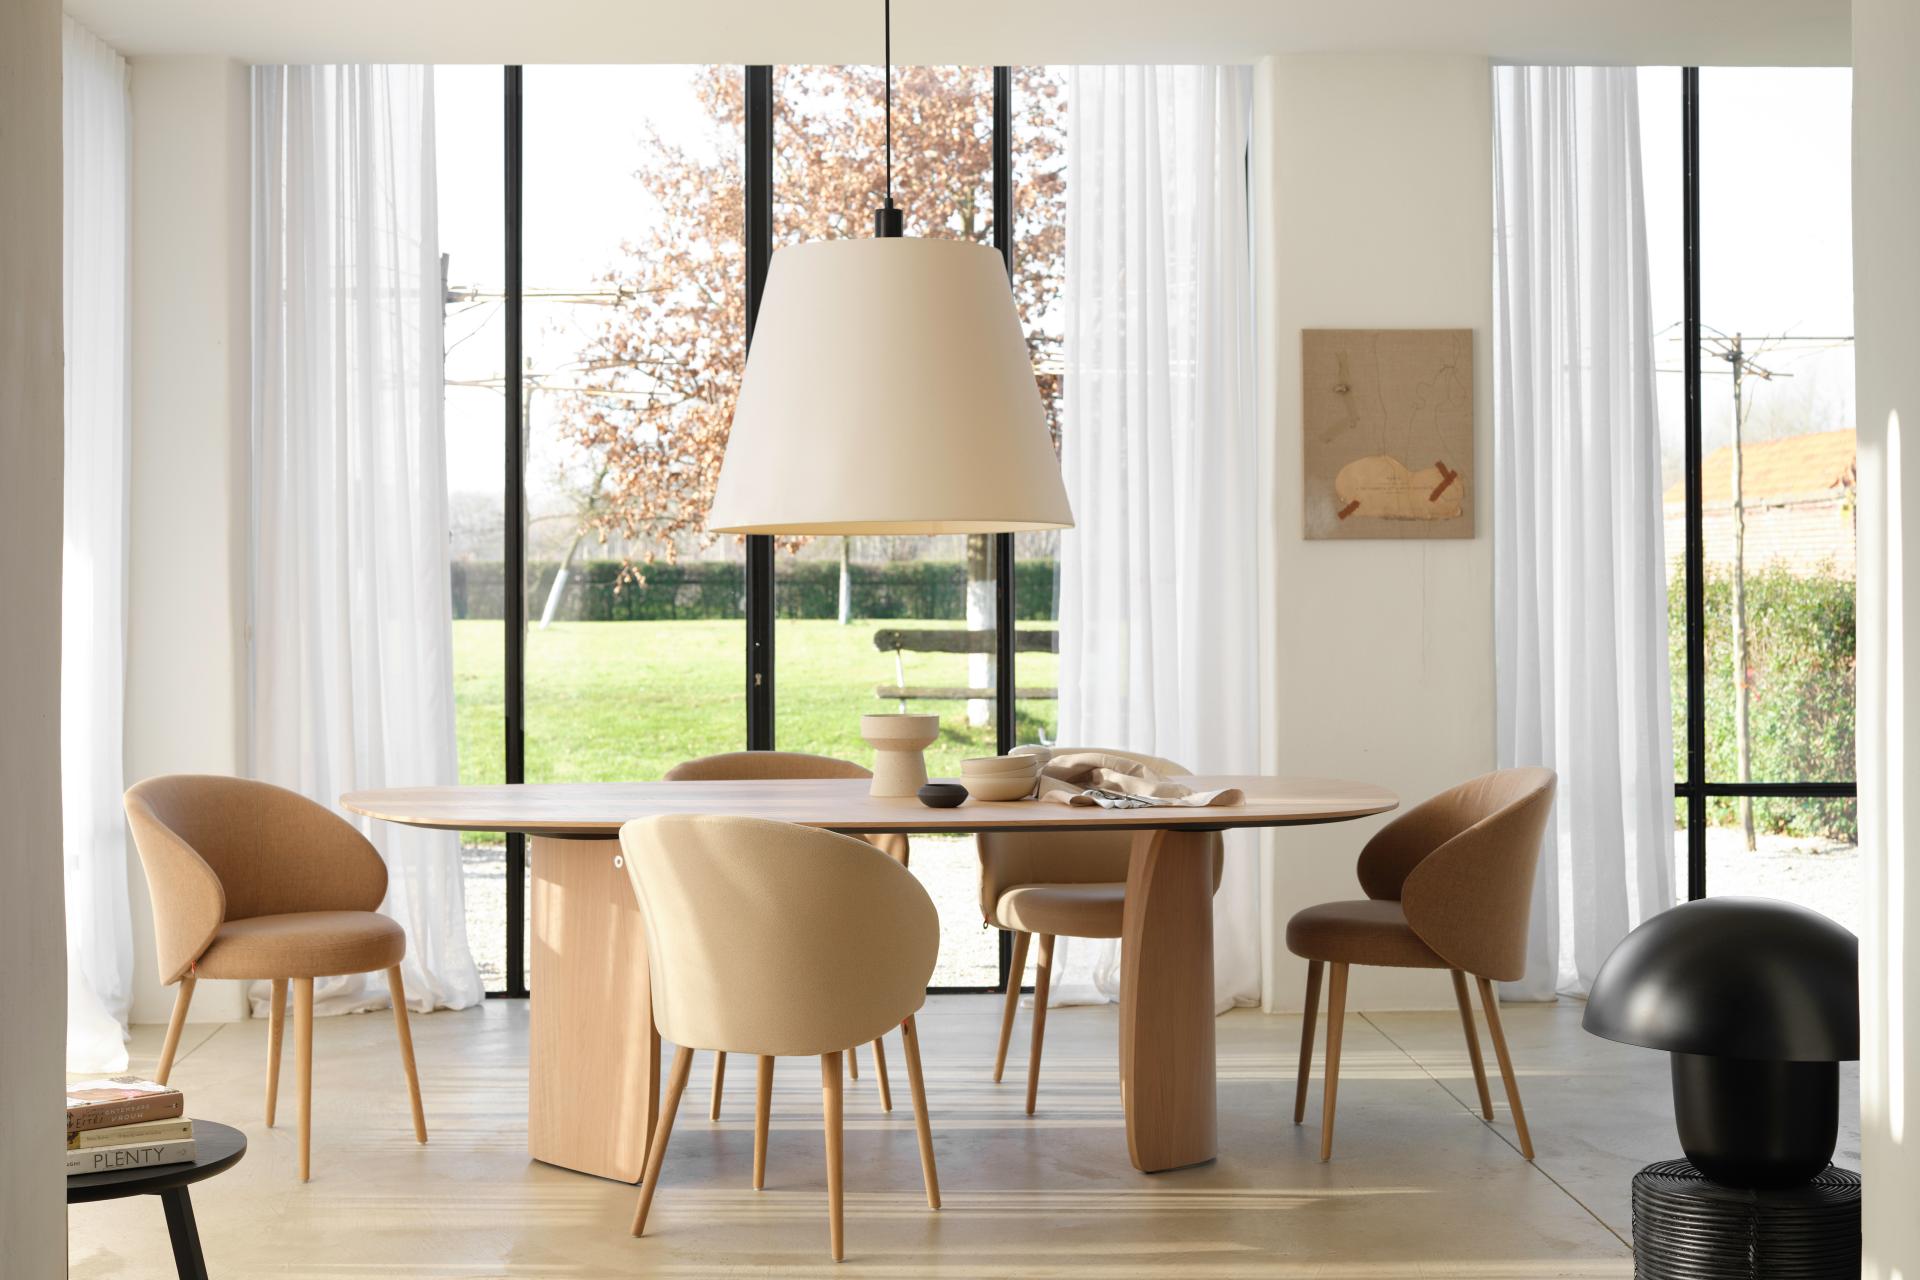 Plateau de table bois-table bois-table coffee meuble-mobilier professionnel